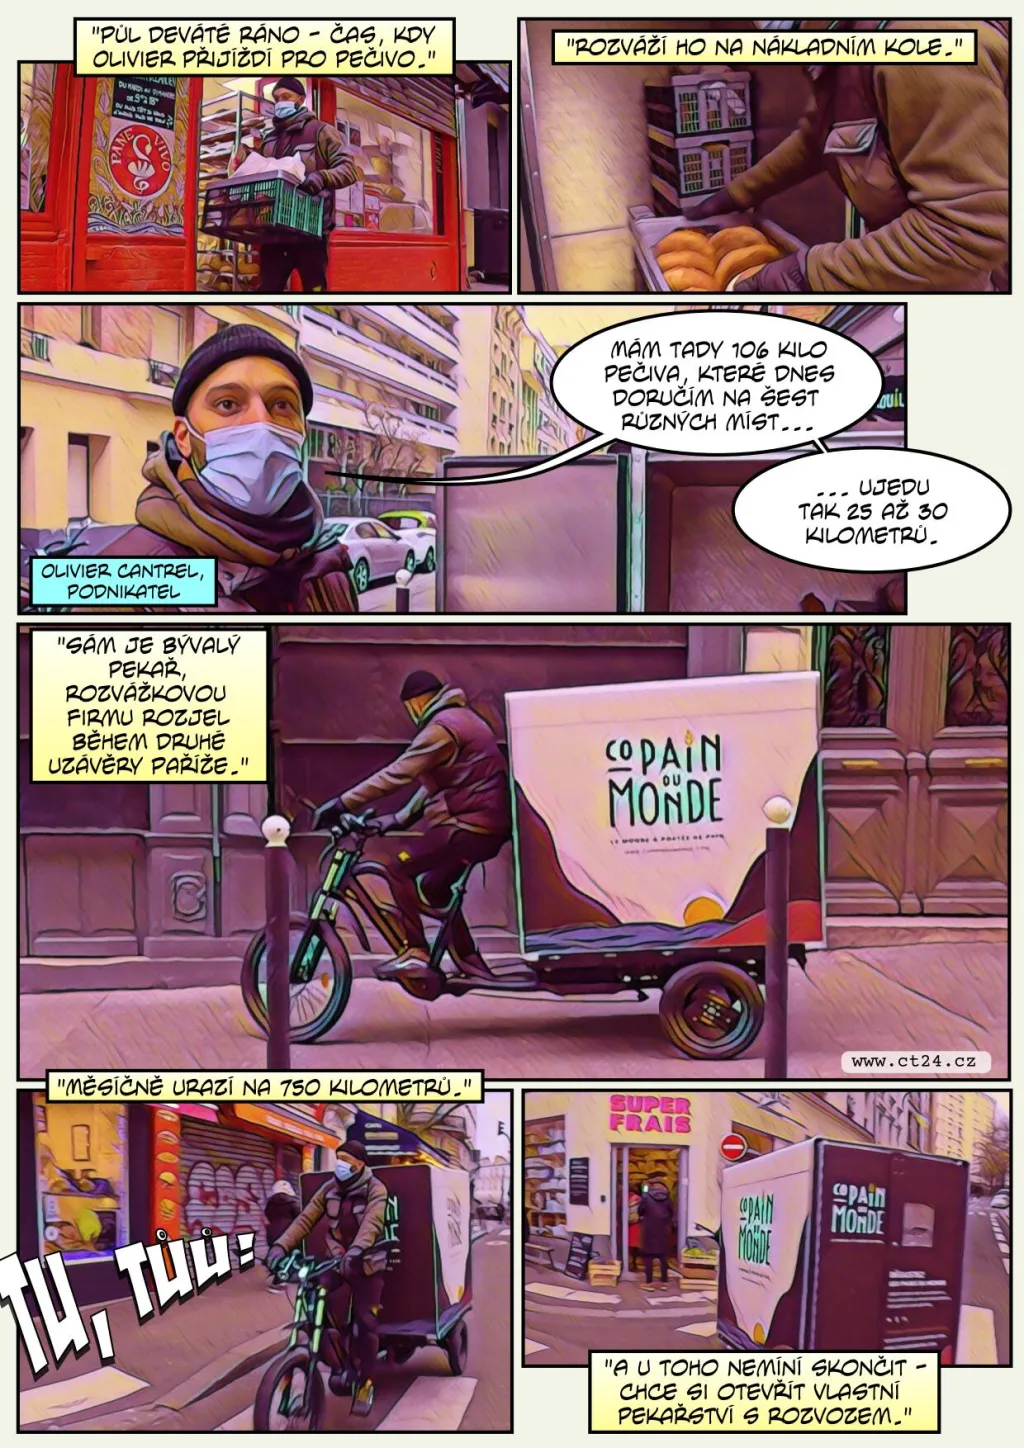 Nákladní kola rozvážejí po Paříži jídlo